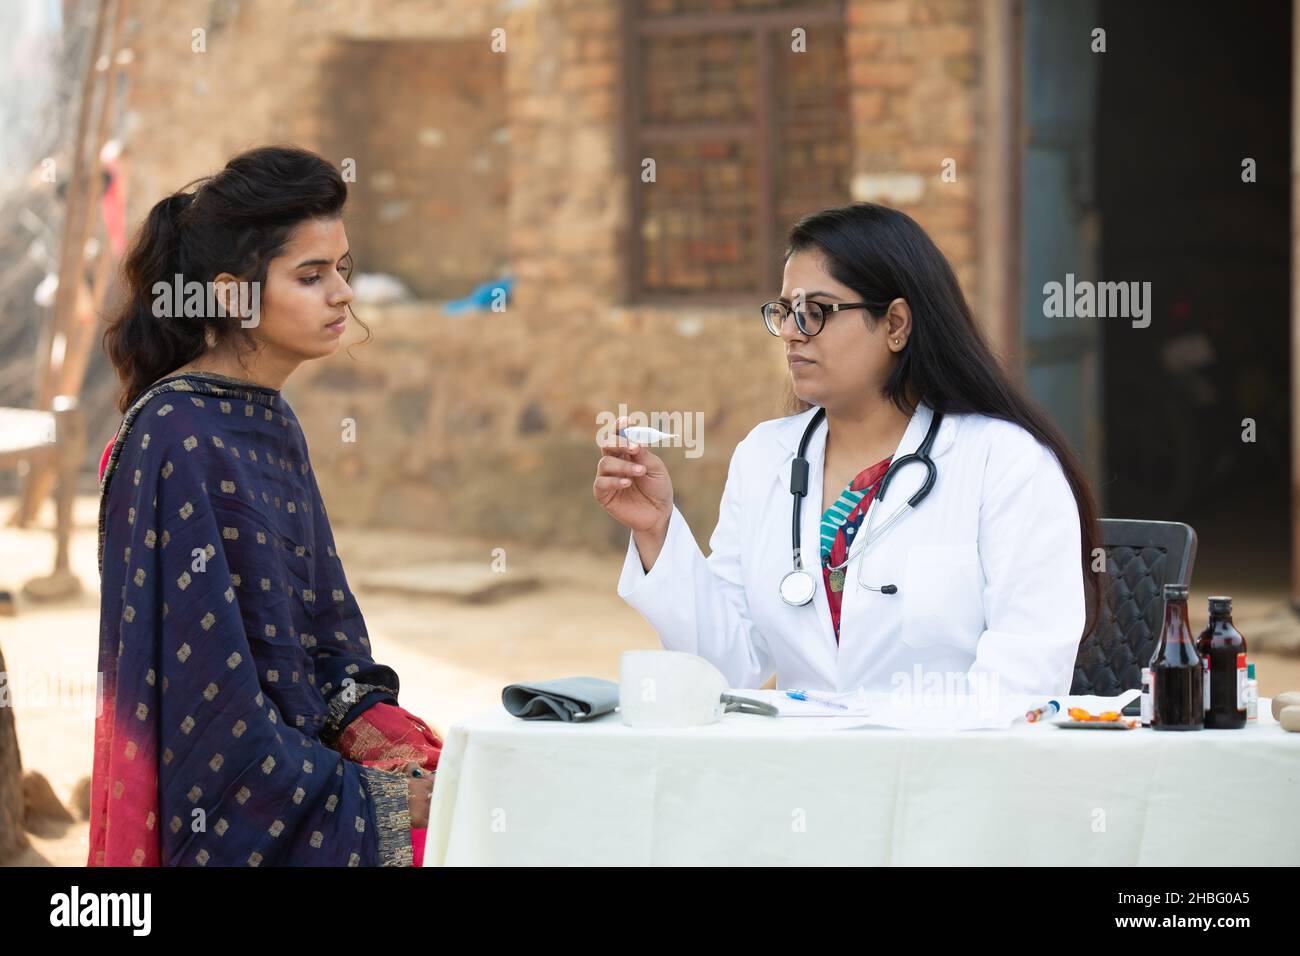 Medico indiano femmina che tiene termometro digitale controllo giovane adulto paziente ragazza al villaggio, donna che ottiene l'esame da persona medica, Rural India He Foto Stock